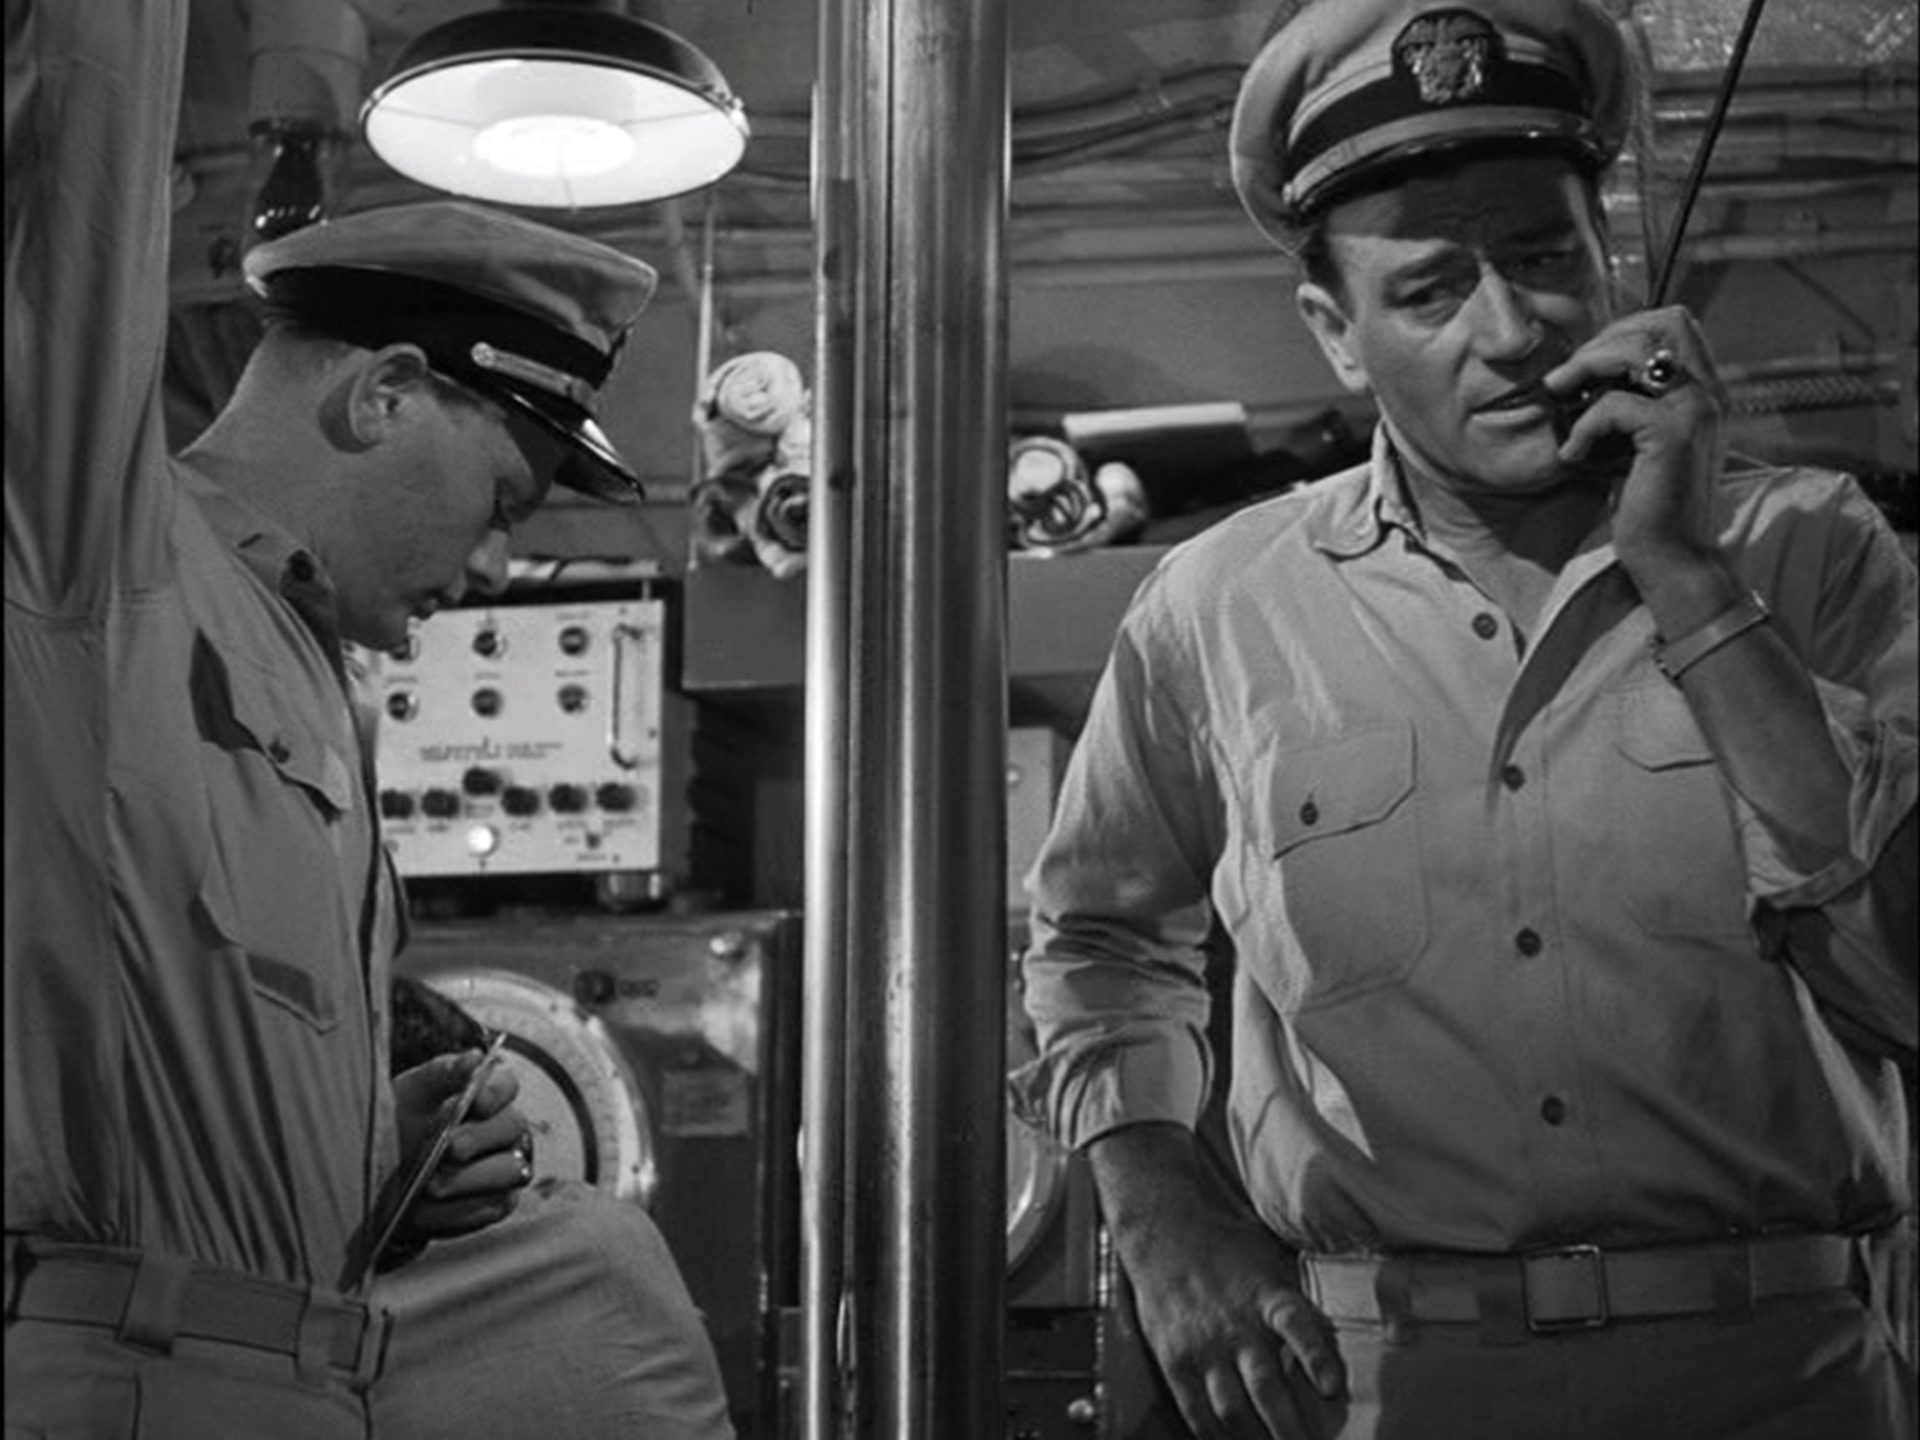 Schwarz-weiße Nahaufnahme von John Wayne als U-Boot-Kommandant am Bordmikrofon, neben ihm, getrennt durch das Periskop, ein Seemann.